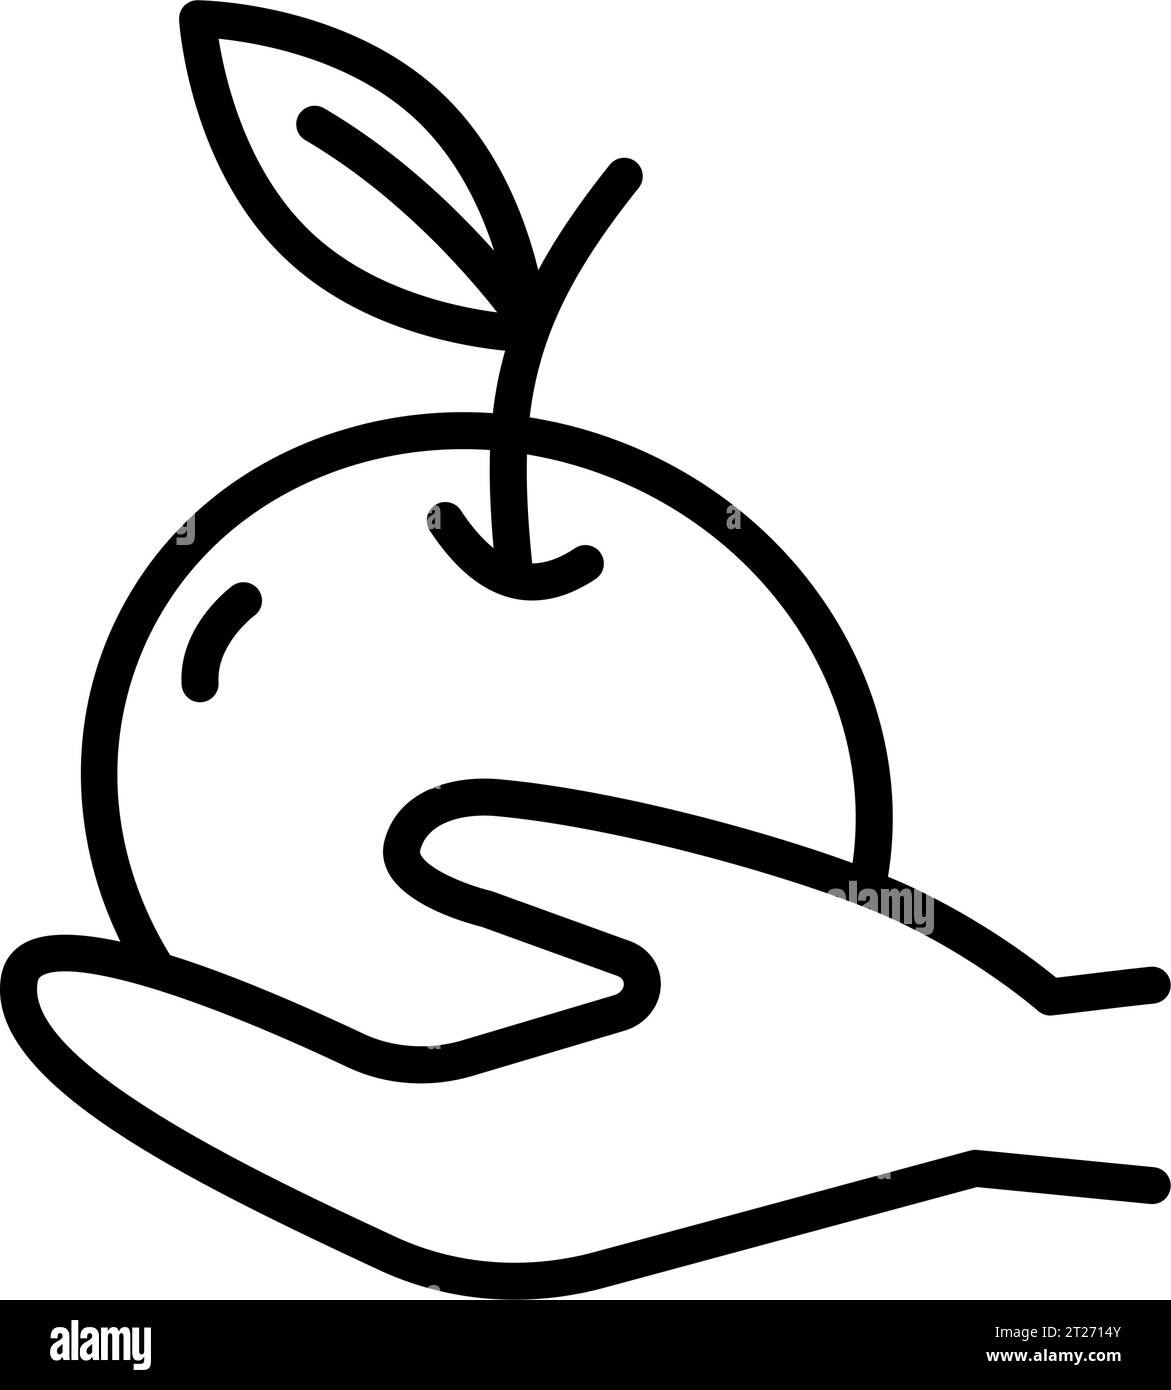 Icona della linea Apple in Hand, concetto di dieta, segno di frutta fresca e sana su sfondo bianco, icona della mela in stile contorno web design mobile Illustrazione Vettoriale